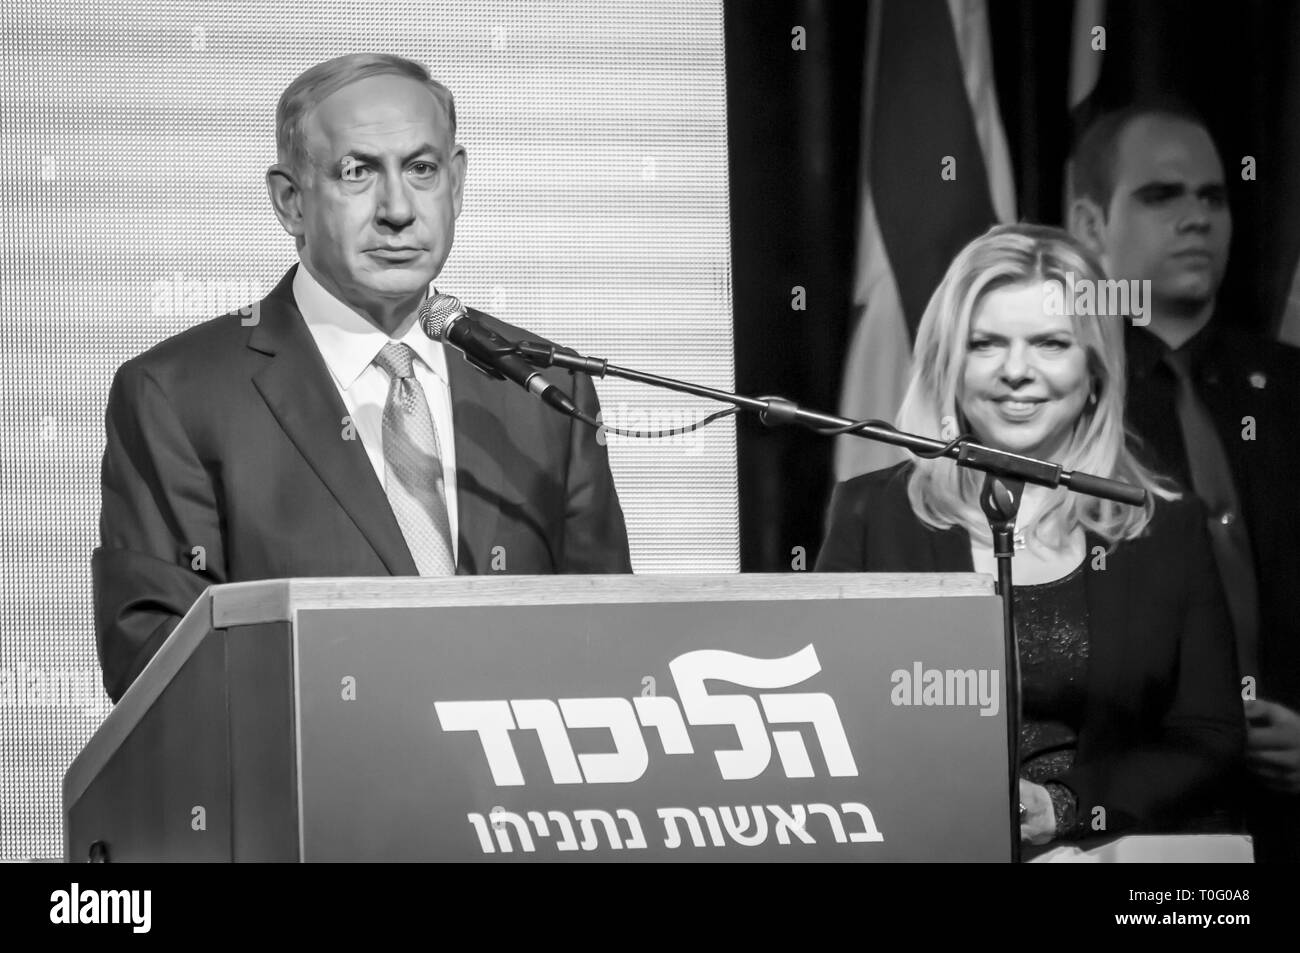 TEL AVIV, ISRAËL. 17 mars, 2015. Le premier ministre israélien Benjamin Netanyahu avec son épouse Sara Netanyahou par lui parler au Likoud event Banque D'Images